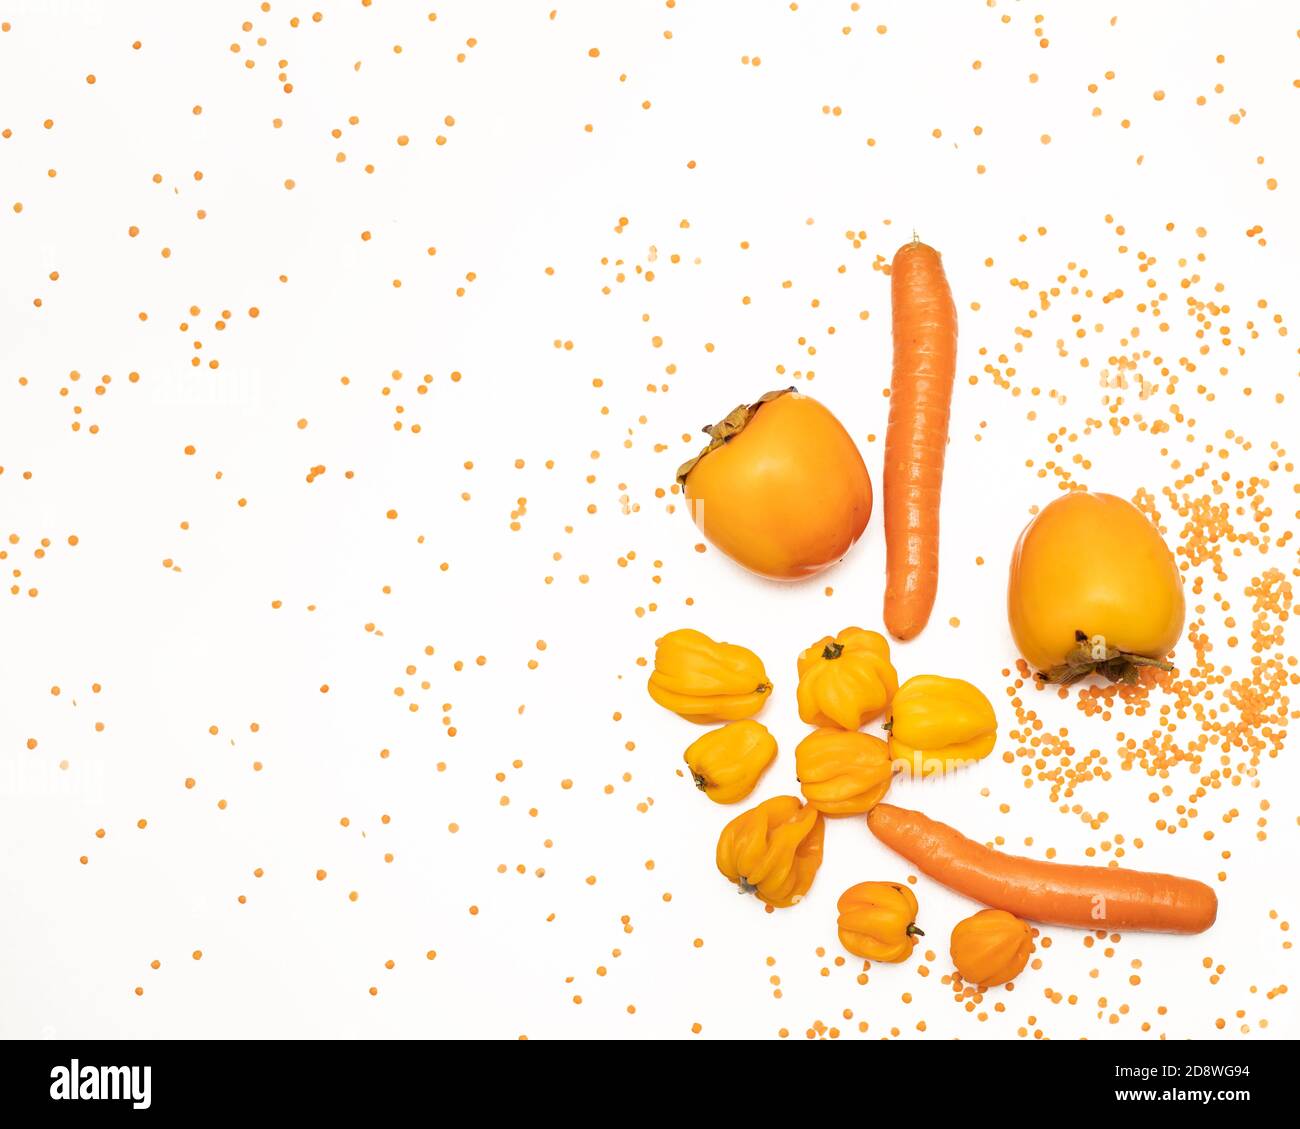 Concept d'automne de couleur orange. Persimmon, carotte, poivre, lentilles rouges sur fond blanc. Nourriture saine, plats végétariens. Ingrédients pour la cuisson Banque D'Images